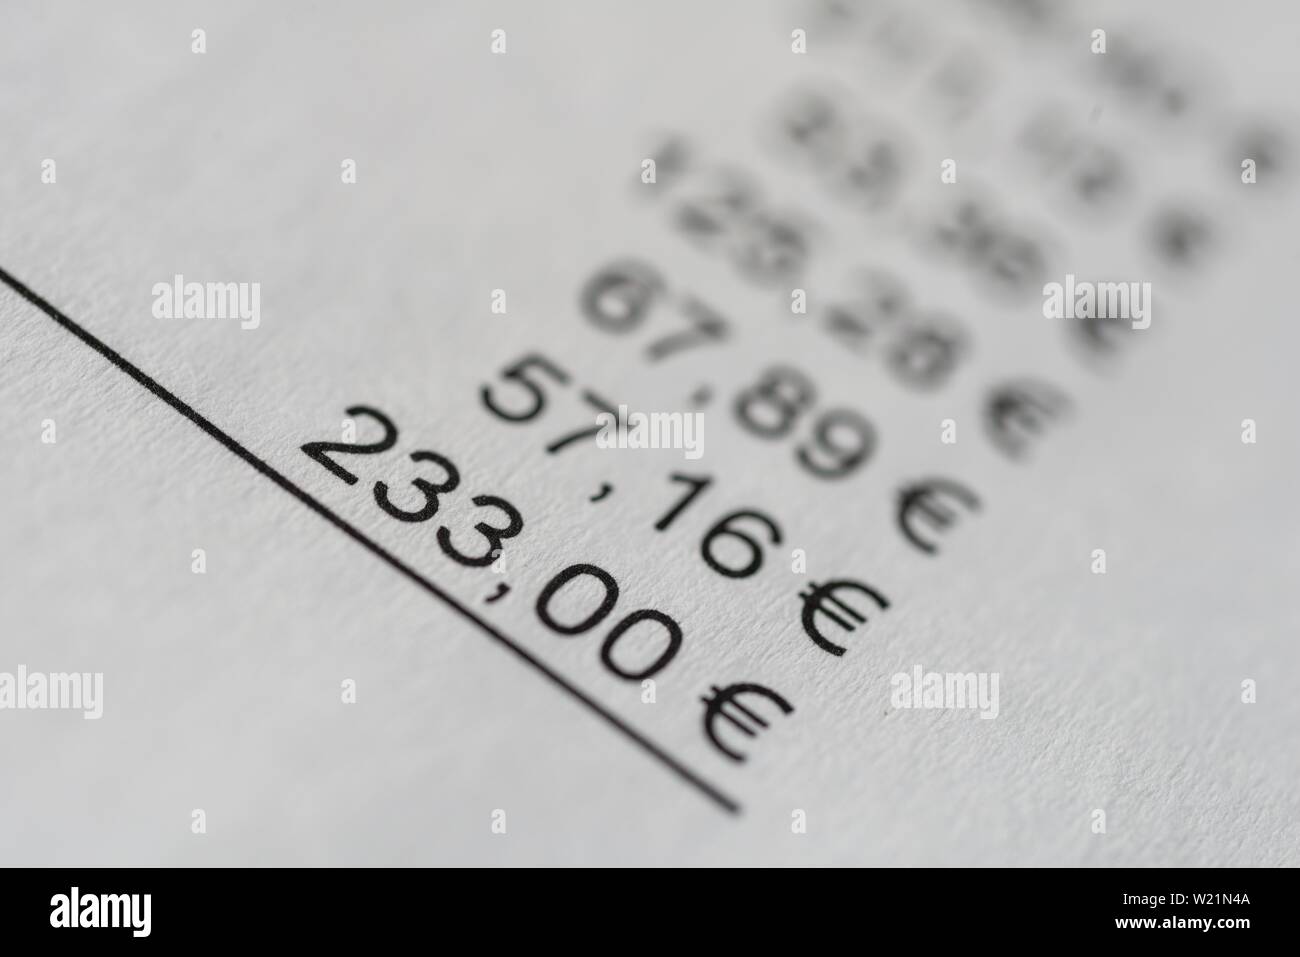 Somme d'une facture sur papier, les références et les prix en euros Banque D'Images